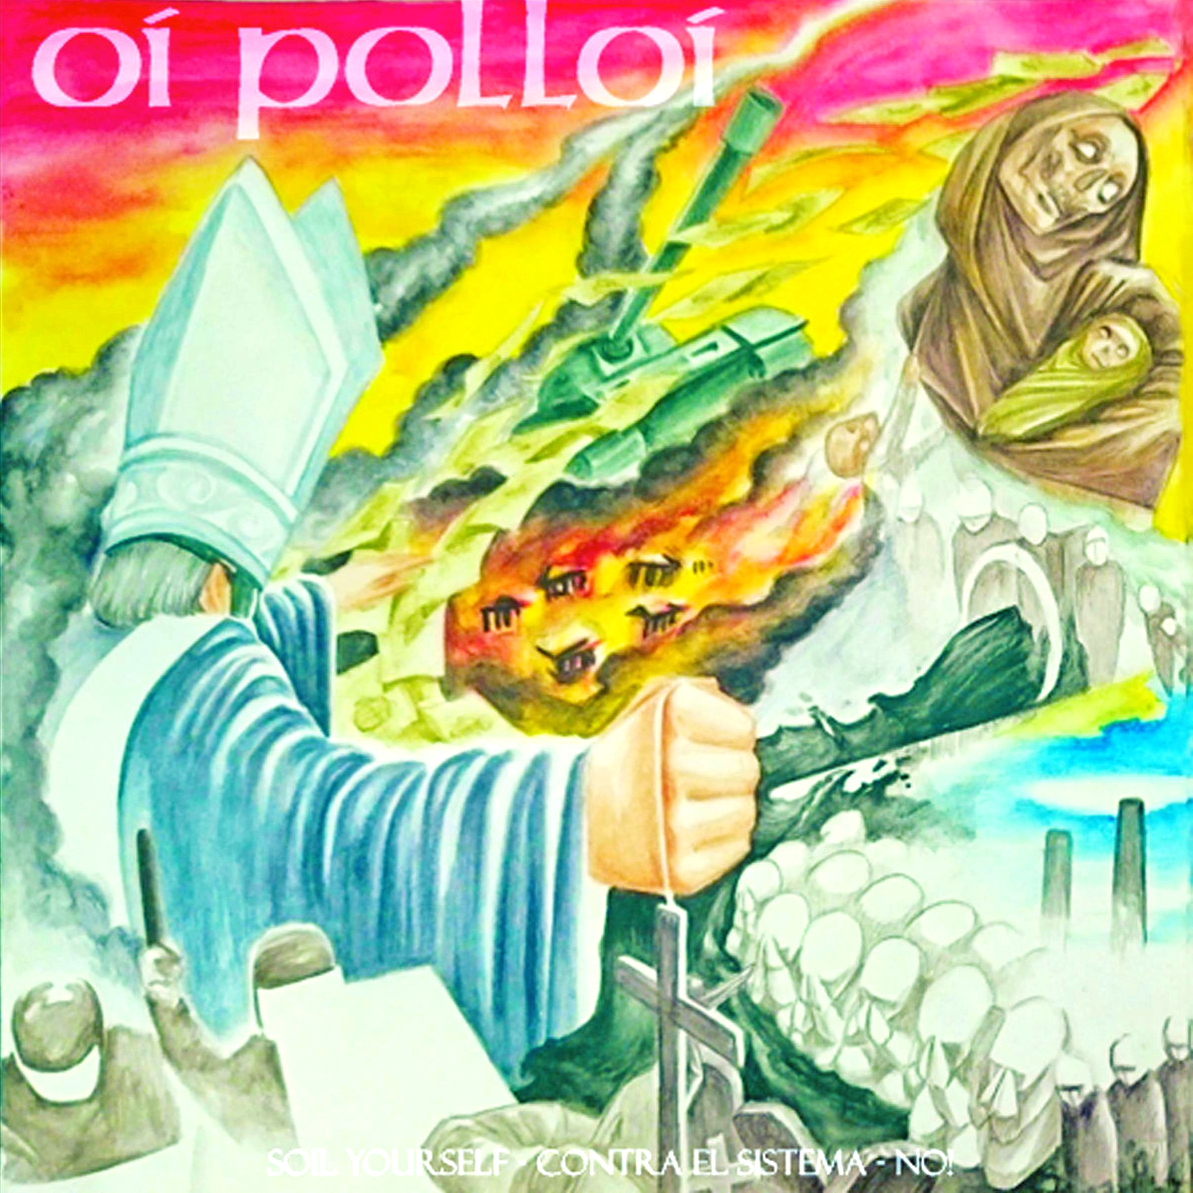 Oi Polloi / Hergian- Split 7"